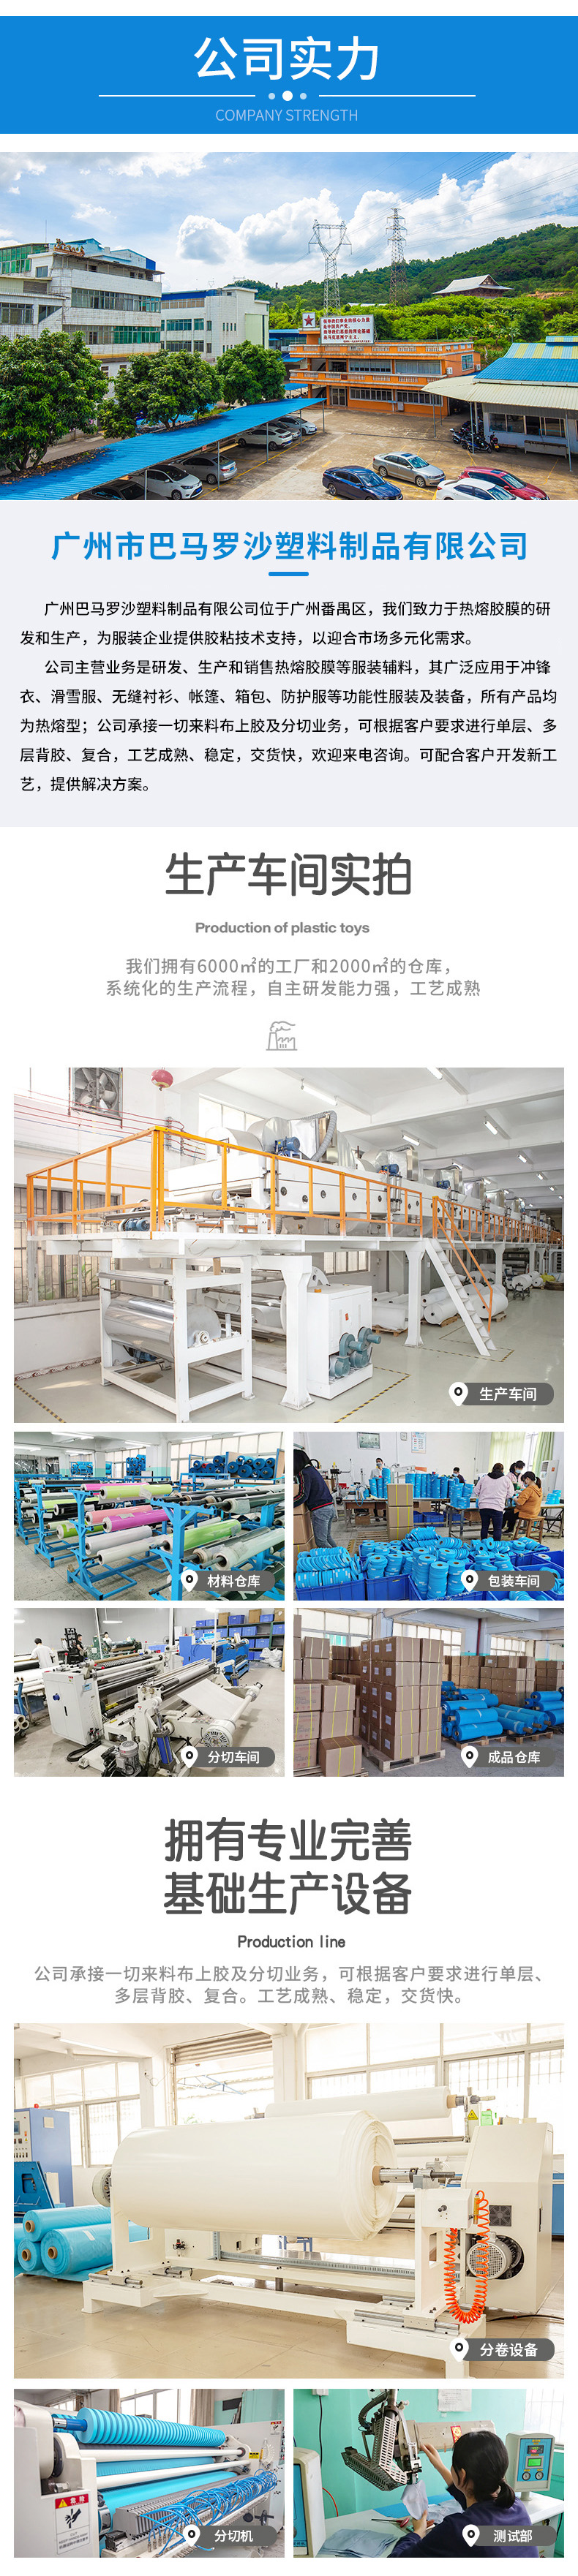 广州巴马罗沙塑料制品有限公司